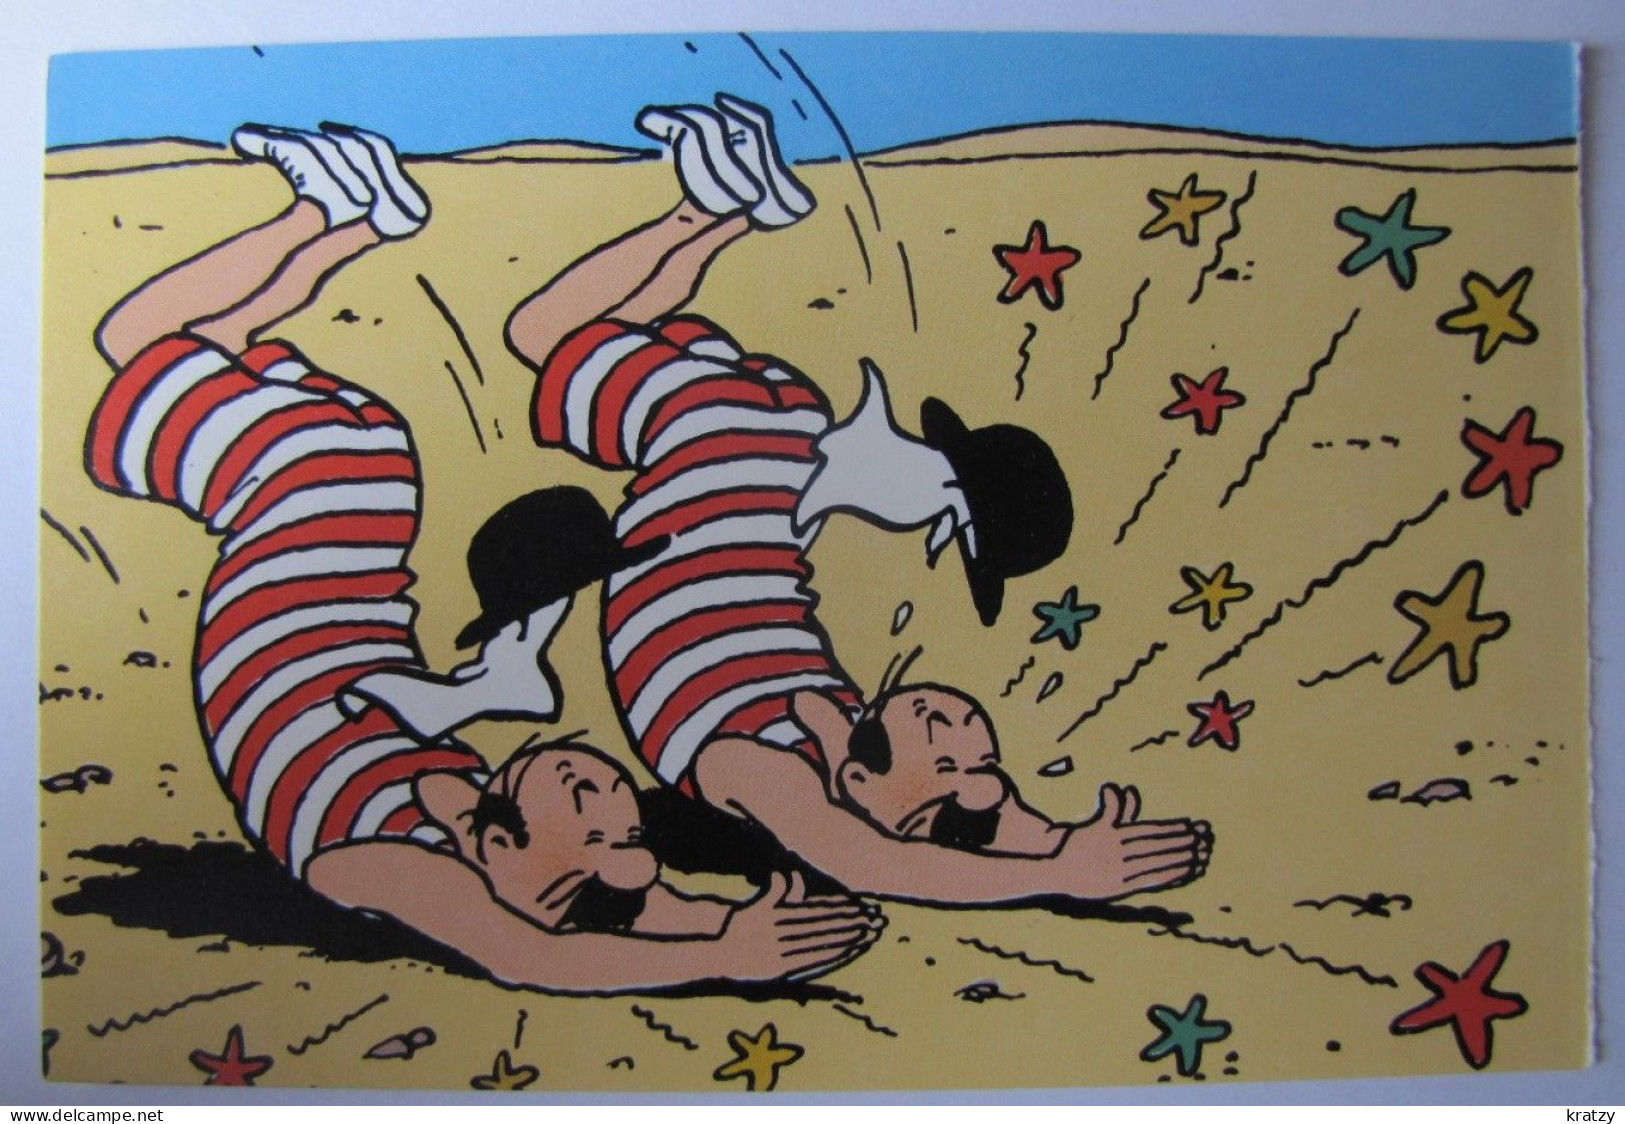 BANDE DESSINEE - Hergé - Tintin - Bandes Dessinées